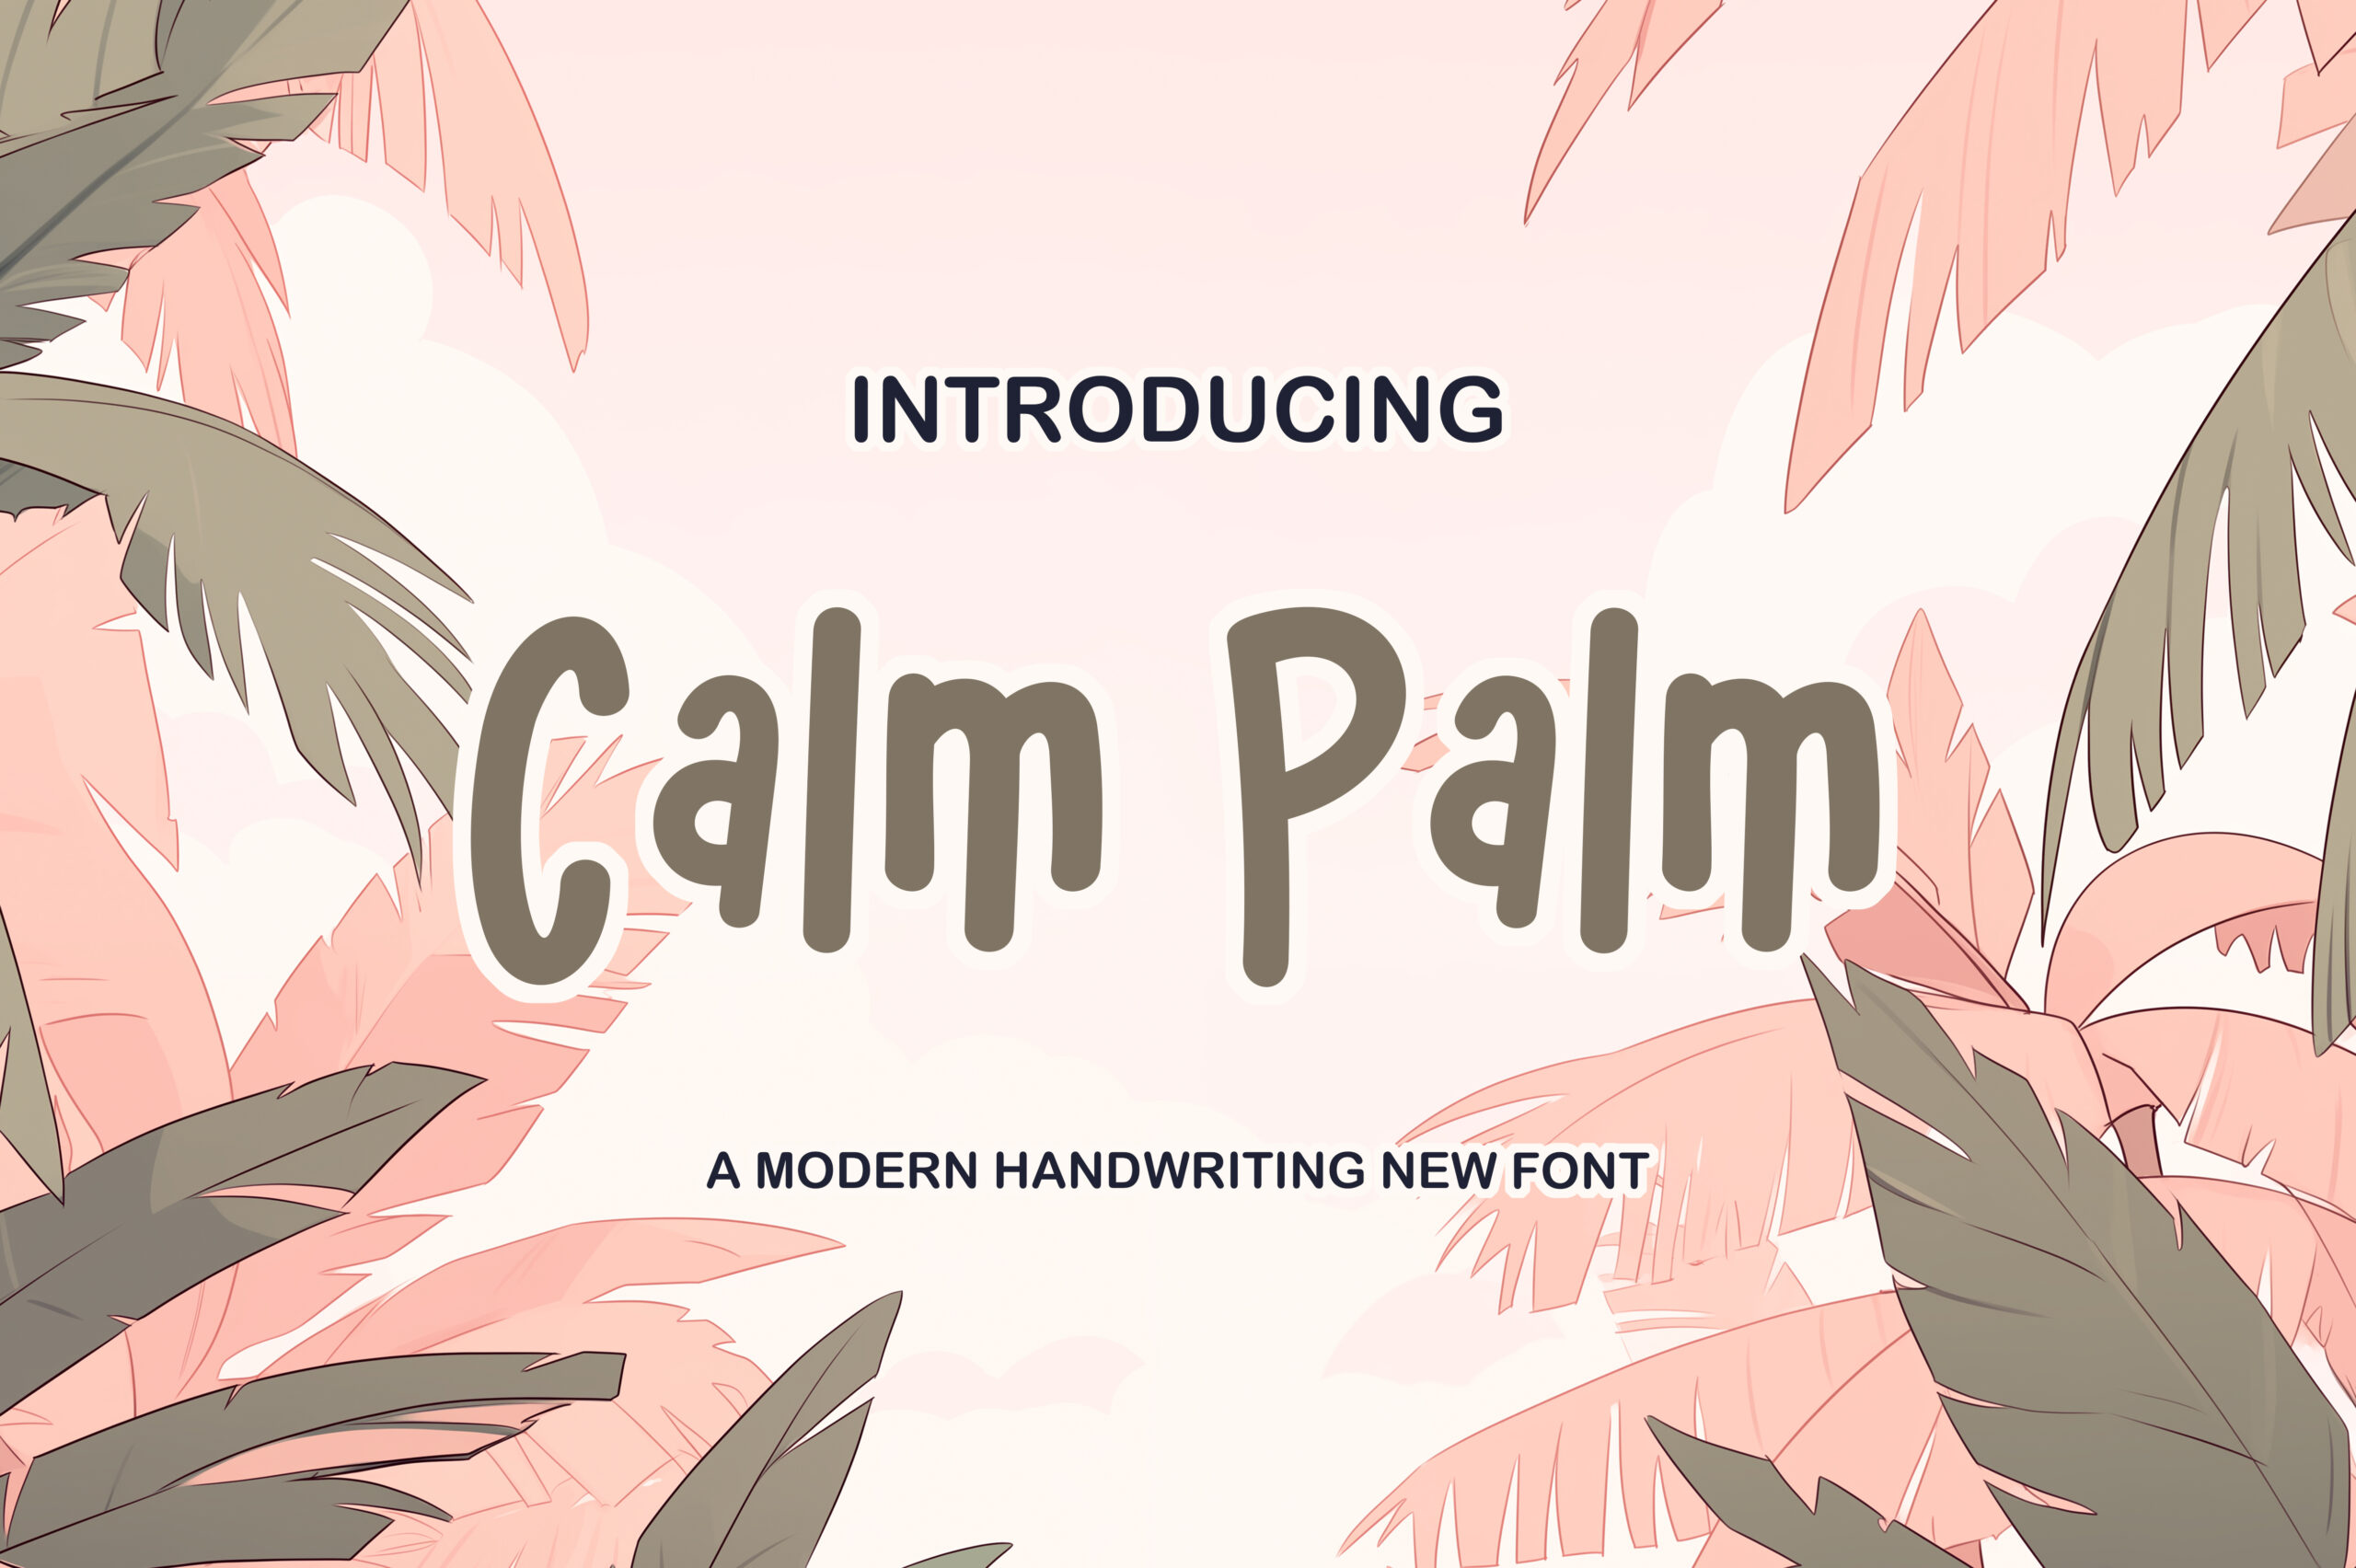 1. Calm Palm